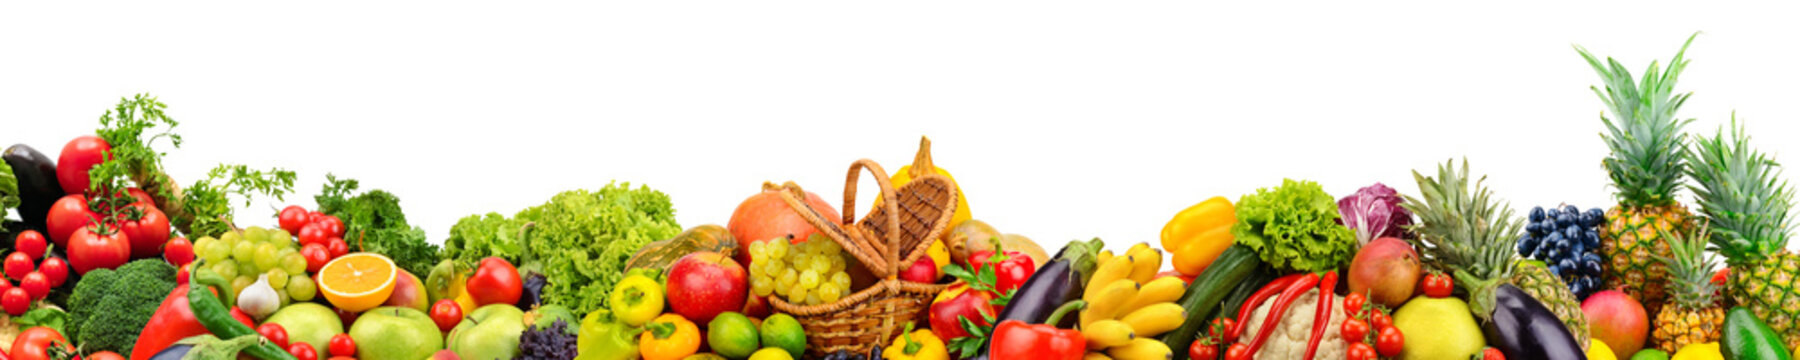 Fototapeta Panoramiczna kolekcja owoców i warzyw dla skinali na białym